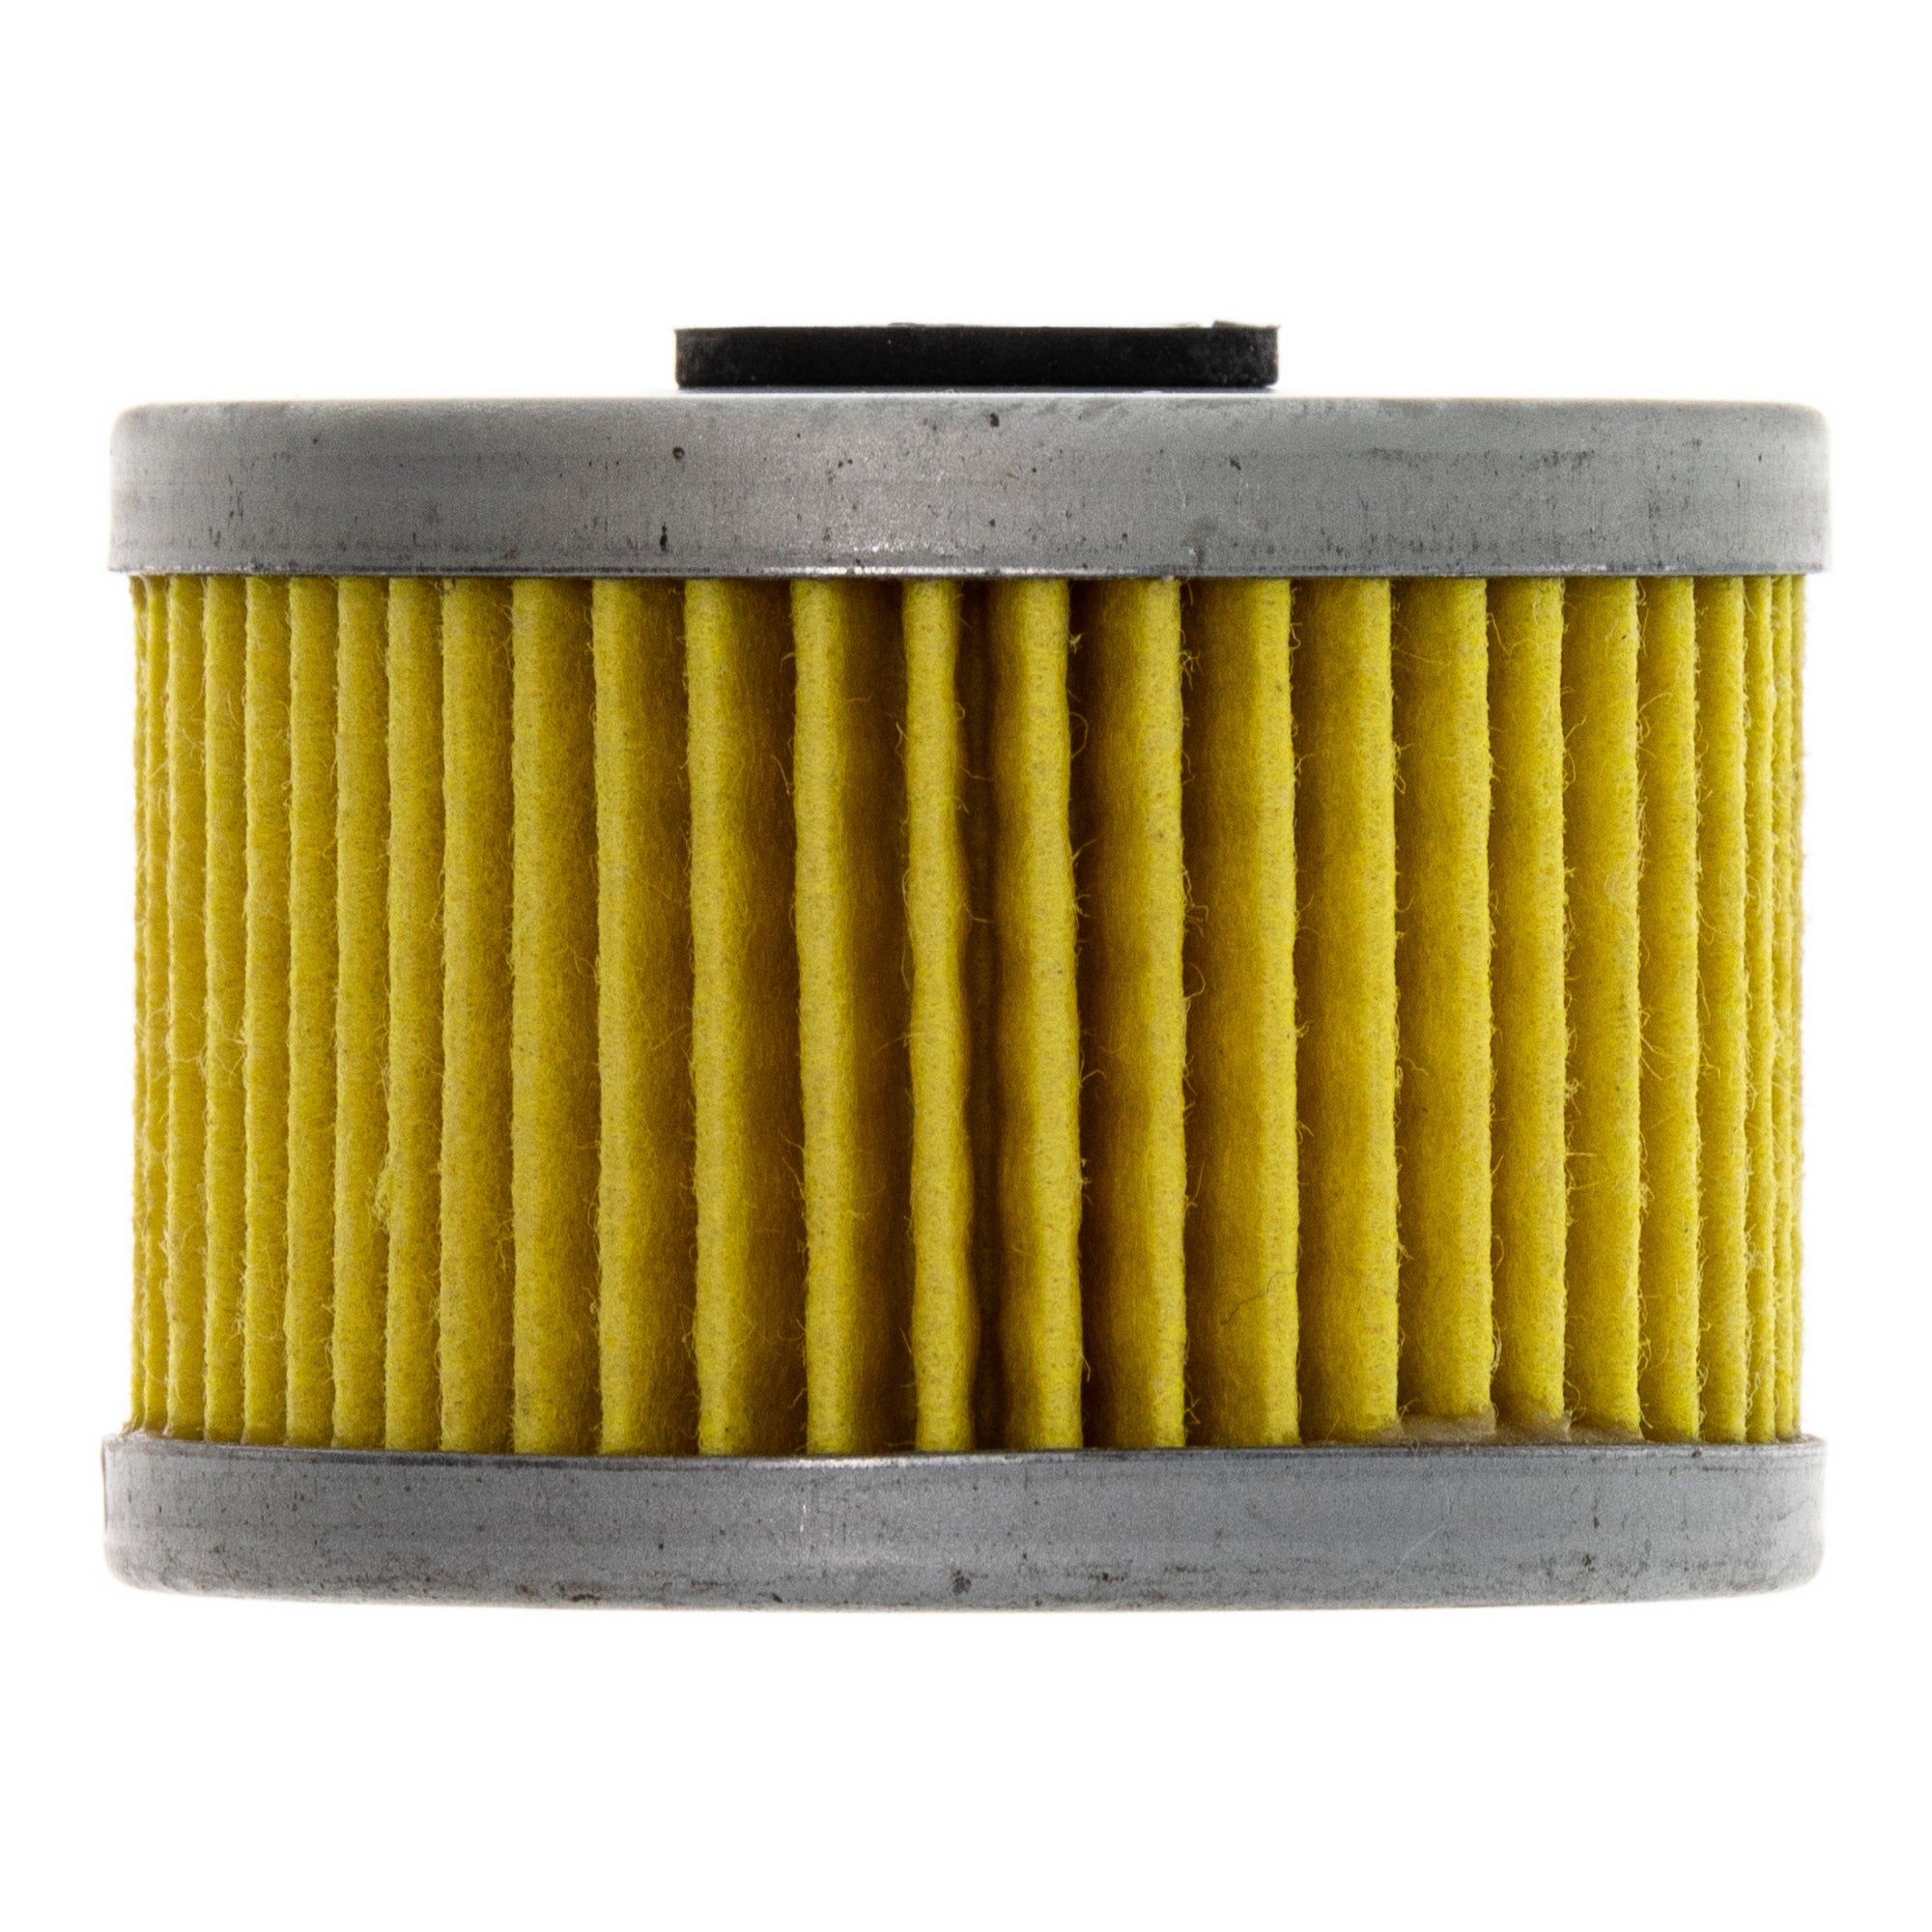 Cylinder Piston Camshaft Gasket for Honda Rancher TRX350 12100-HN5-670